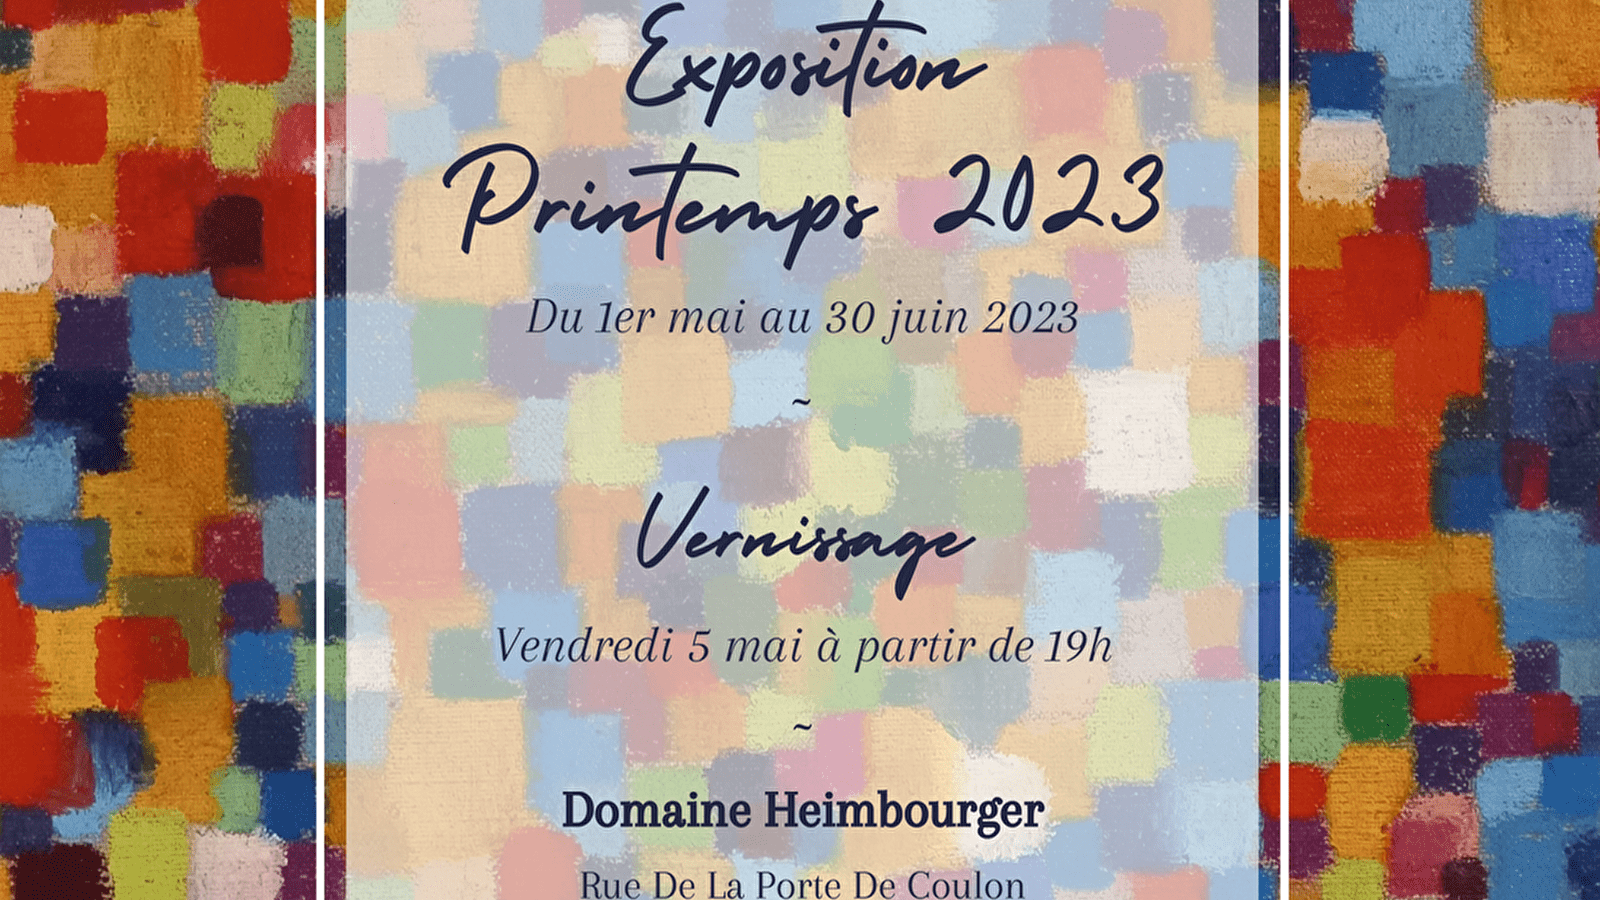 Exposition 'Printemps 2023' - Saint-Cyr-les-Colons